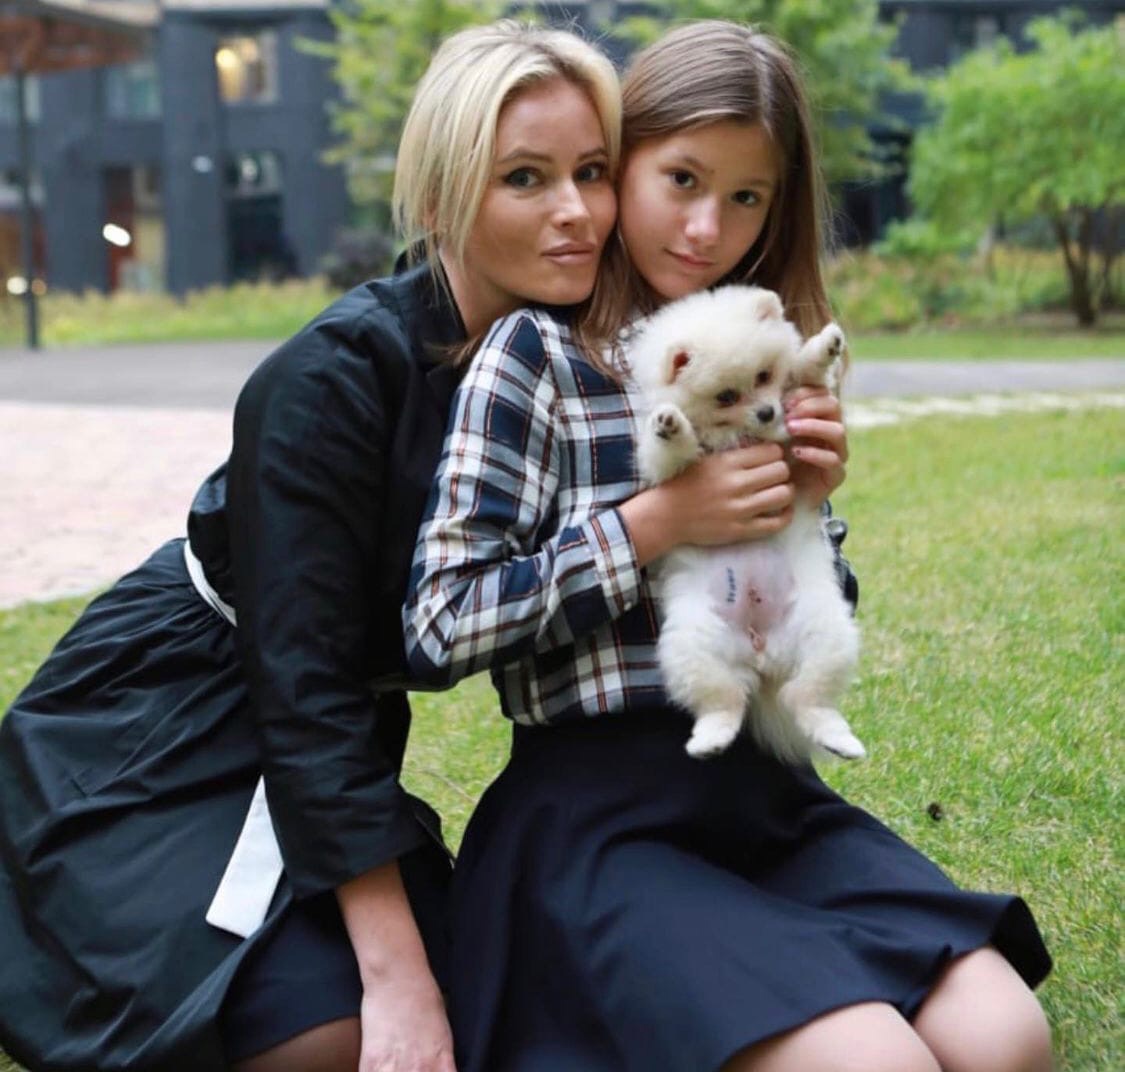 "Максим докапался": Дана Борисова пожаловалась на поведение отца своей дочери
